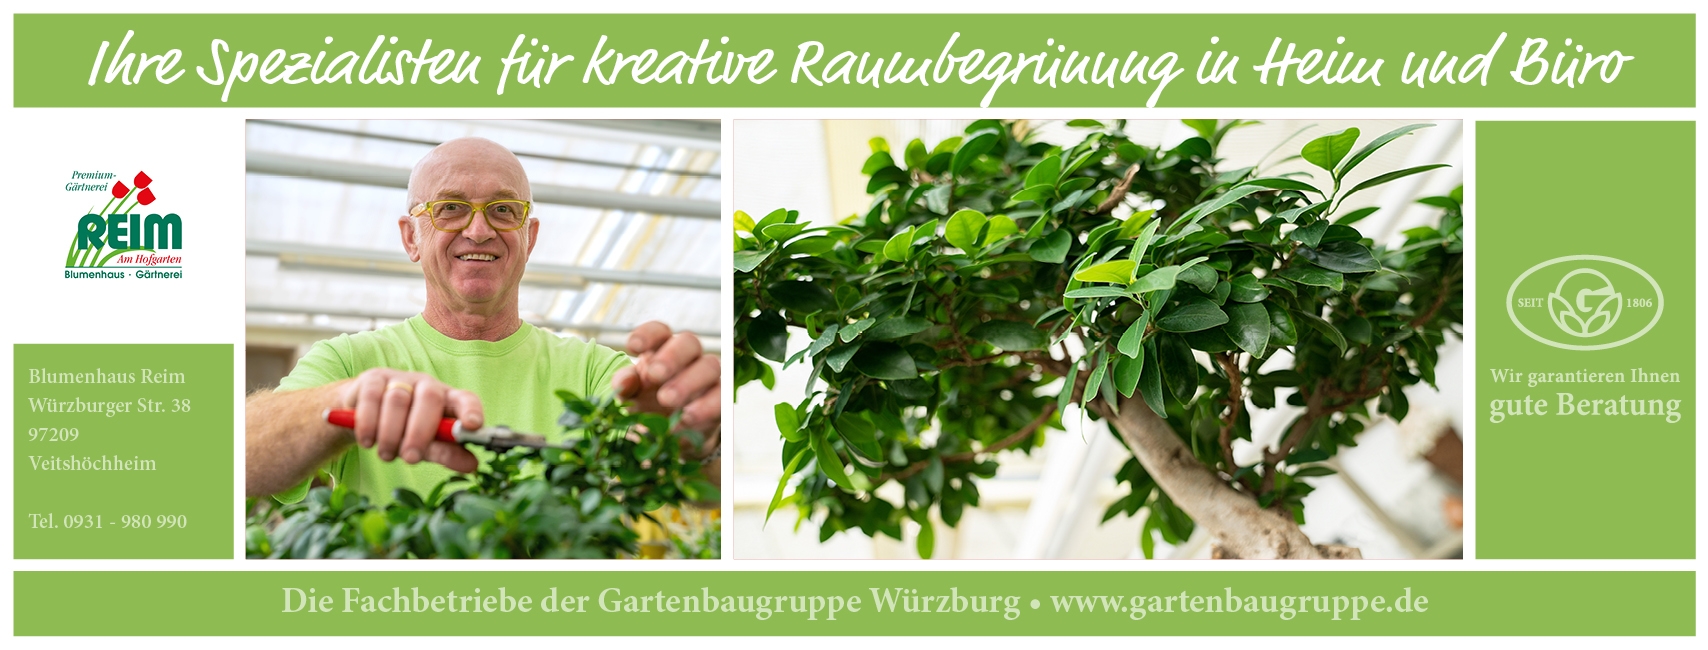 Blumenhaus Reim Veitshöchheim - Gartenbaugruppe Würzburg